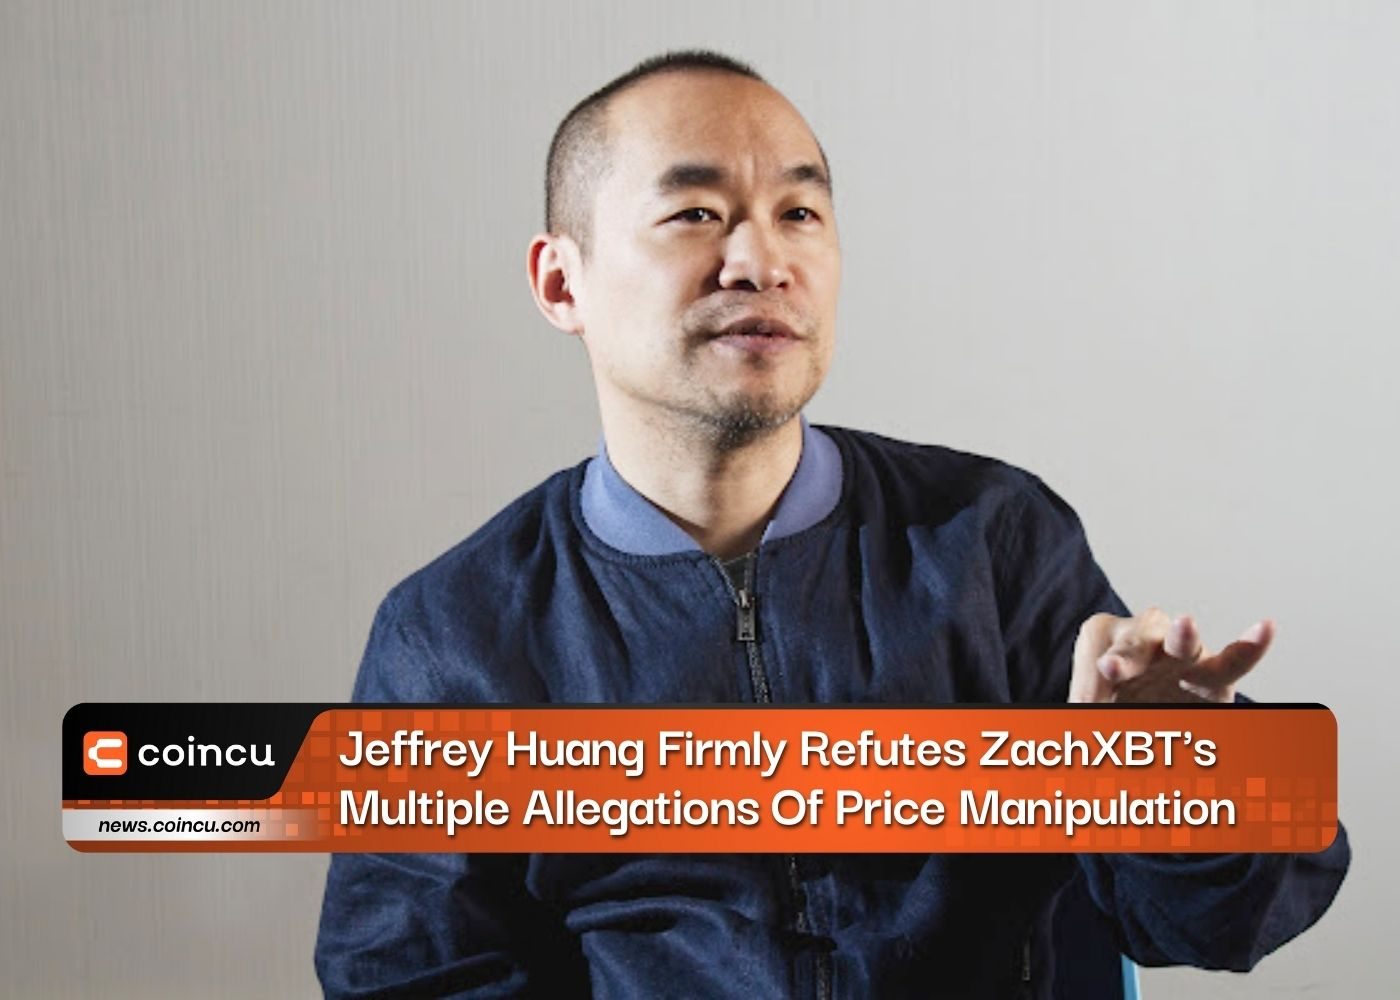 Jeffrey Huang refuta firmemente as múltiplas alegações de manipulação de preços da ZachXBT